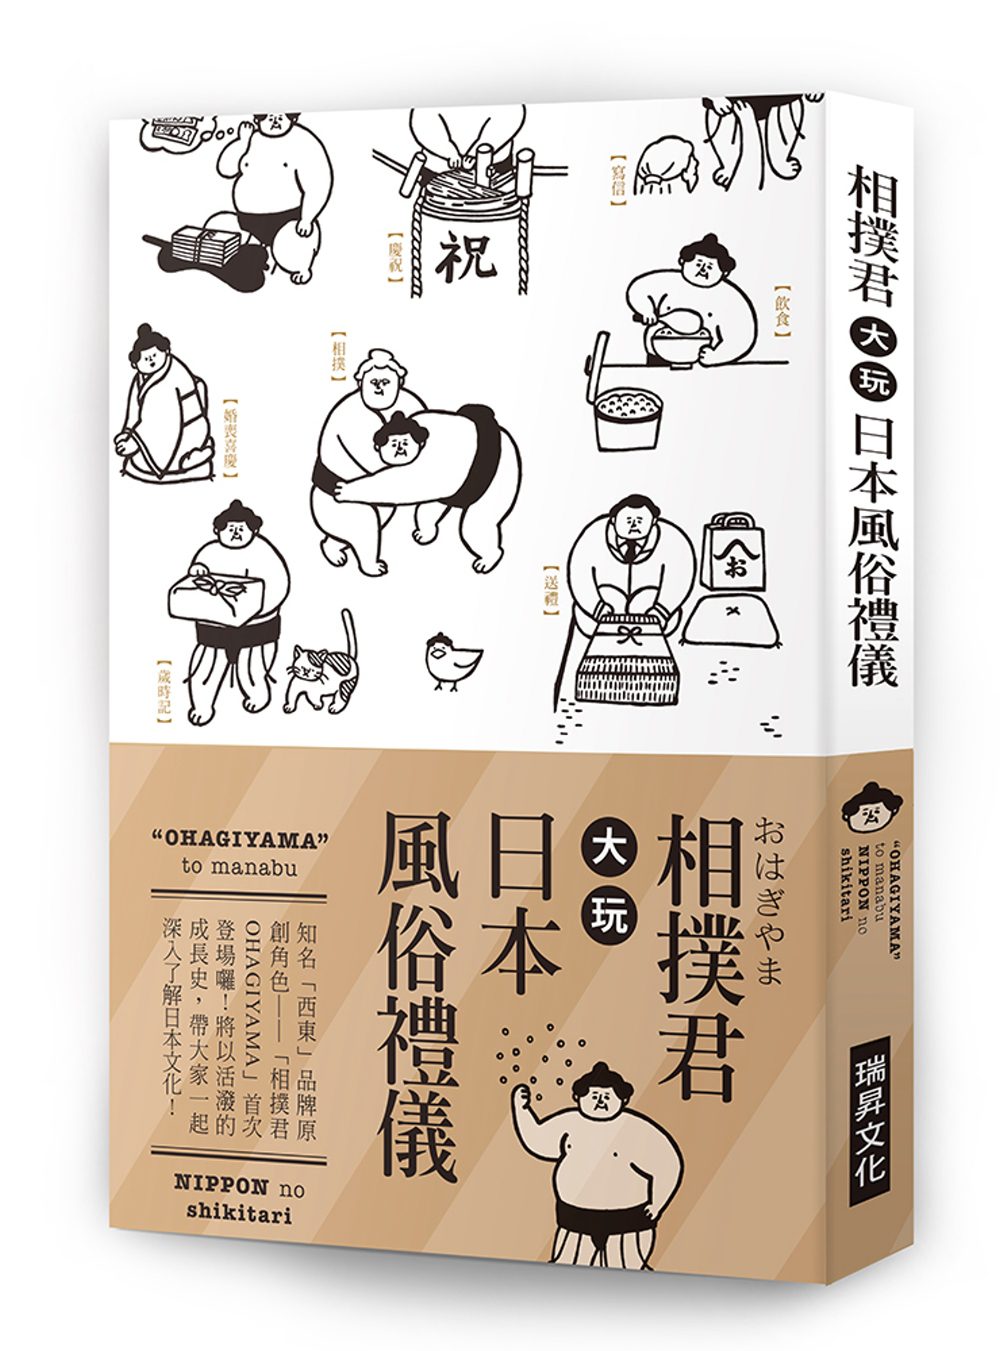 相撲君大玩日本風俗禮儀：知名「西東」品牌原創角色:「相撲君OHAGIYAMA」首次